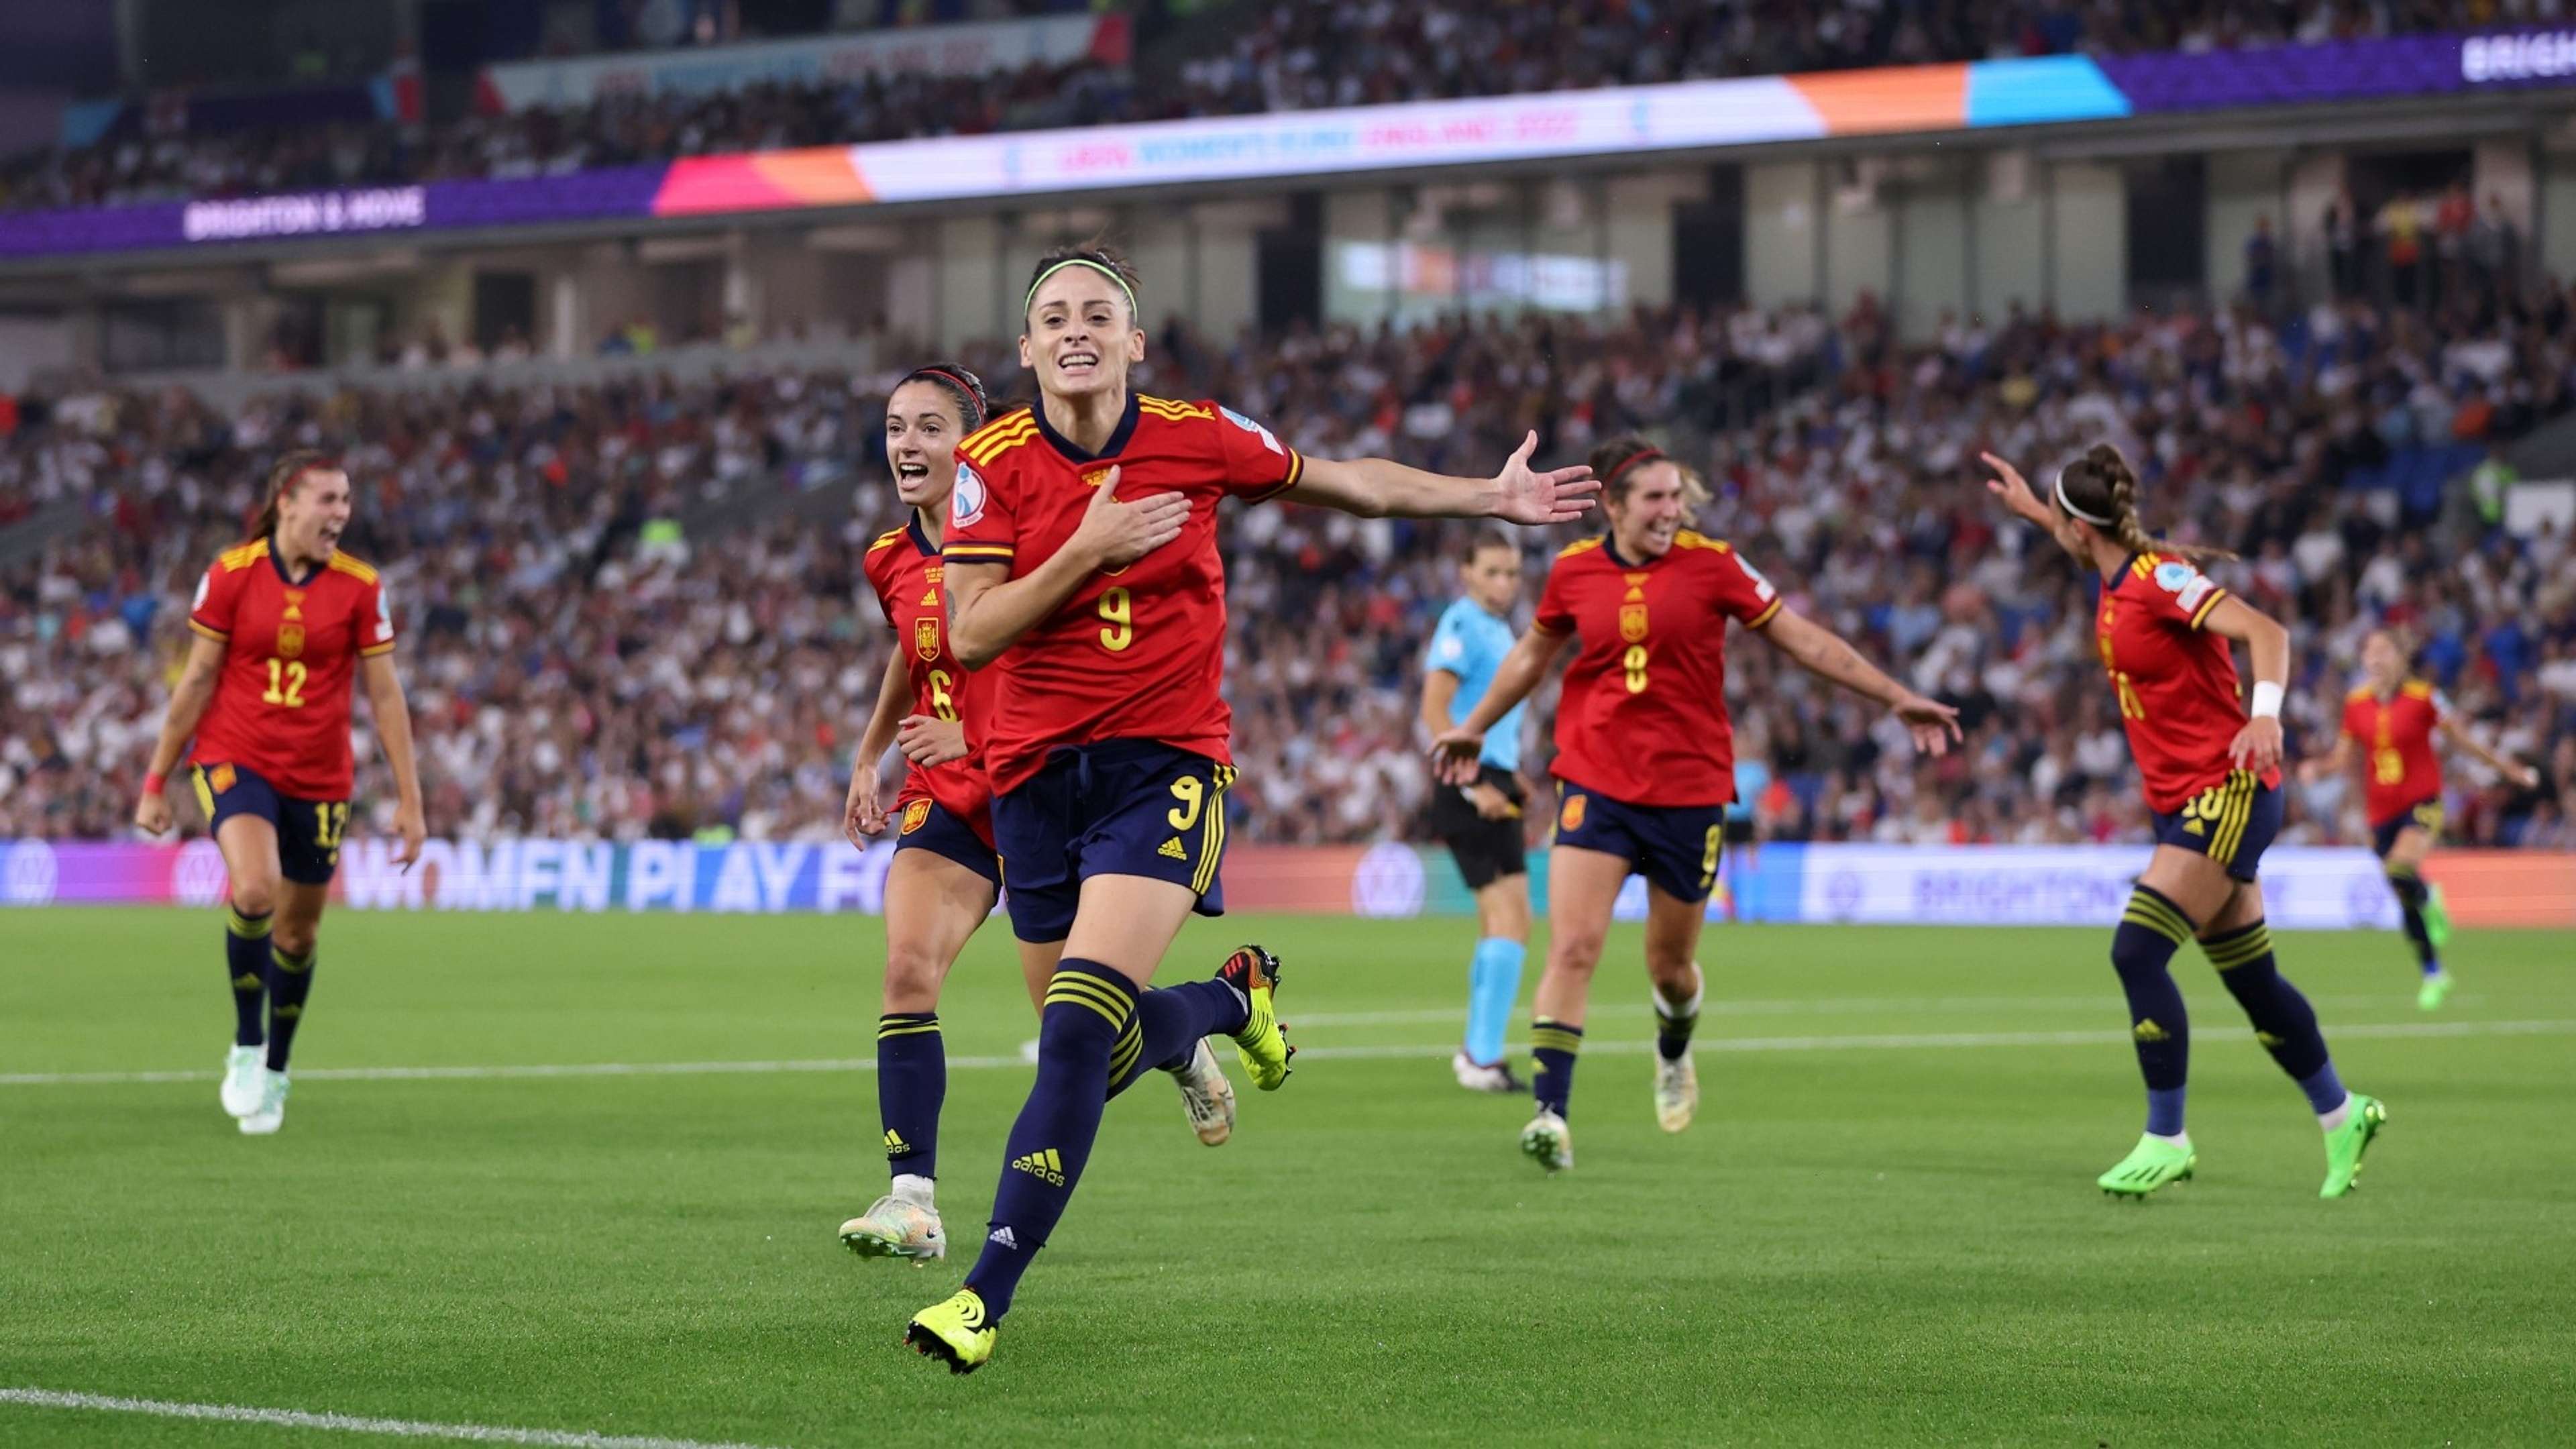 Spain women's team goal